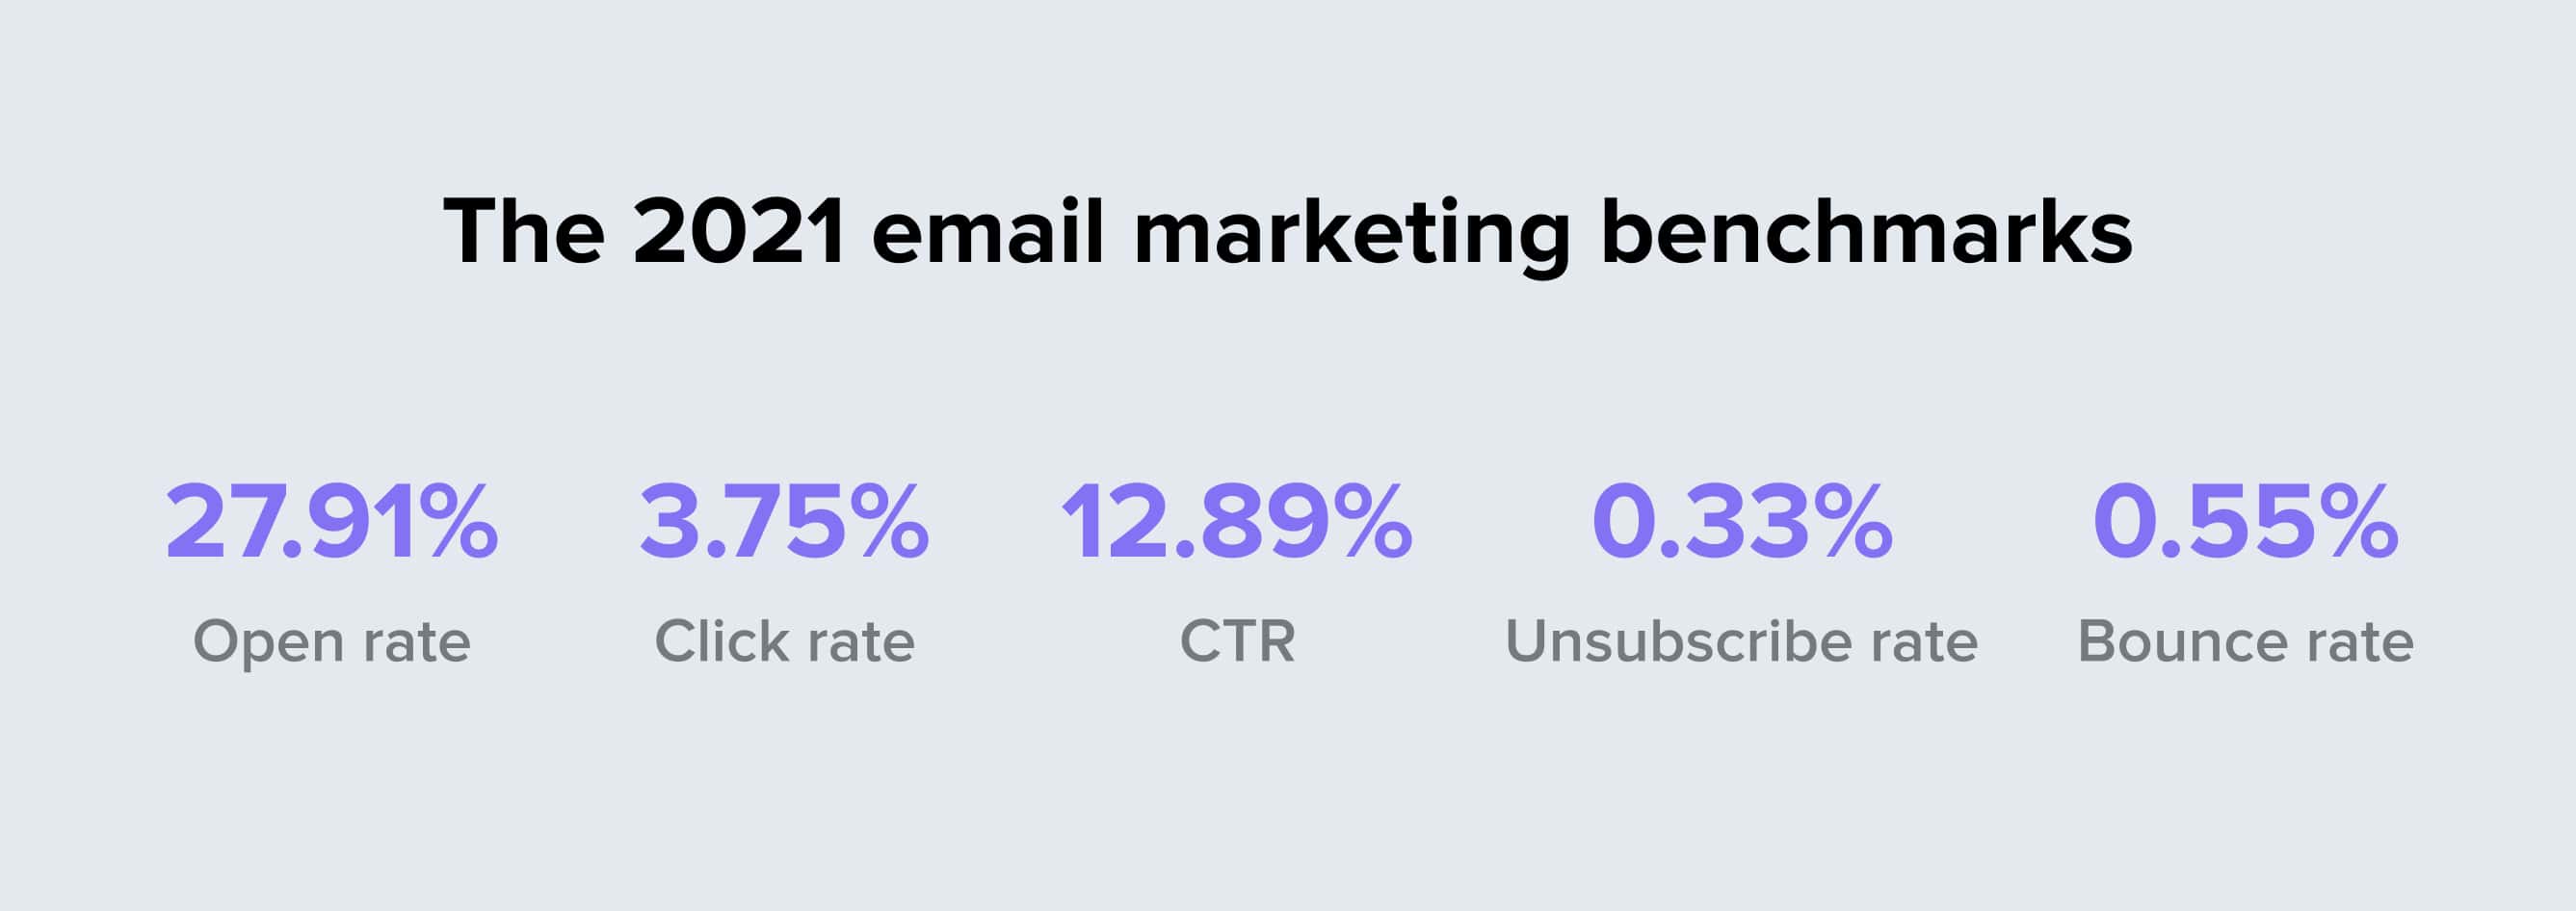 2021 email marketing average benchmark stats